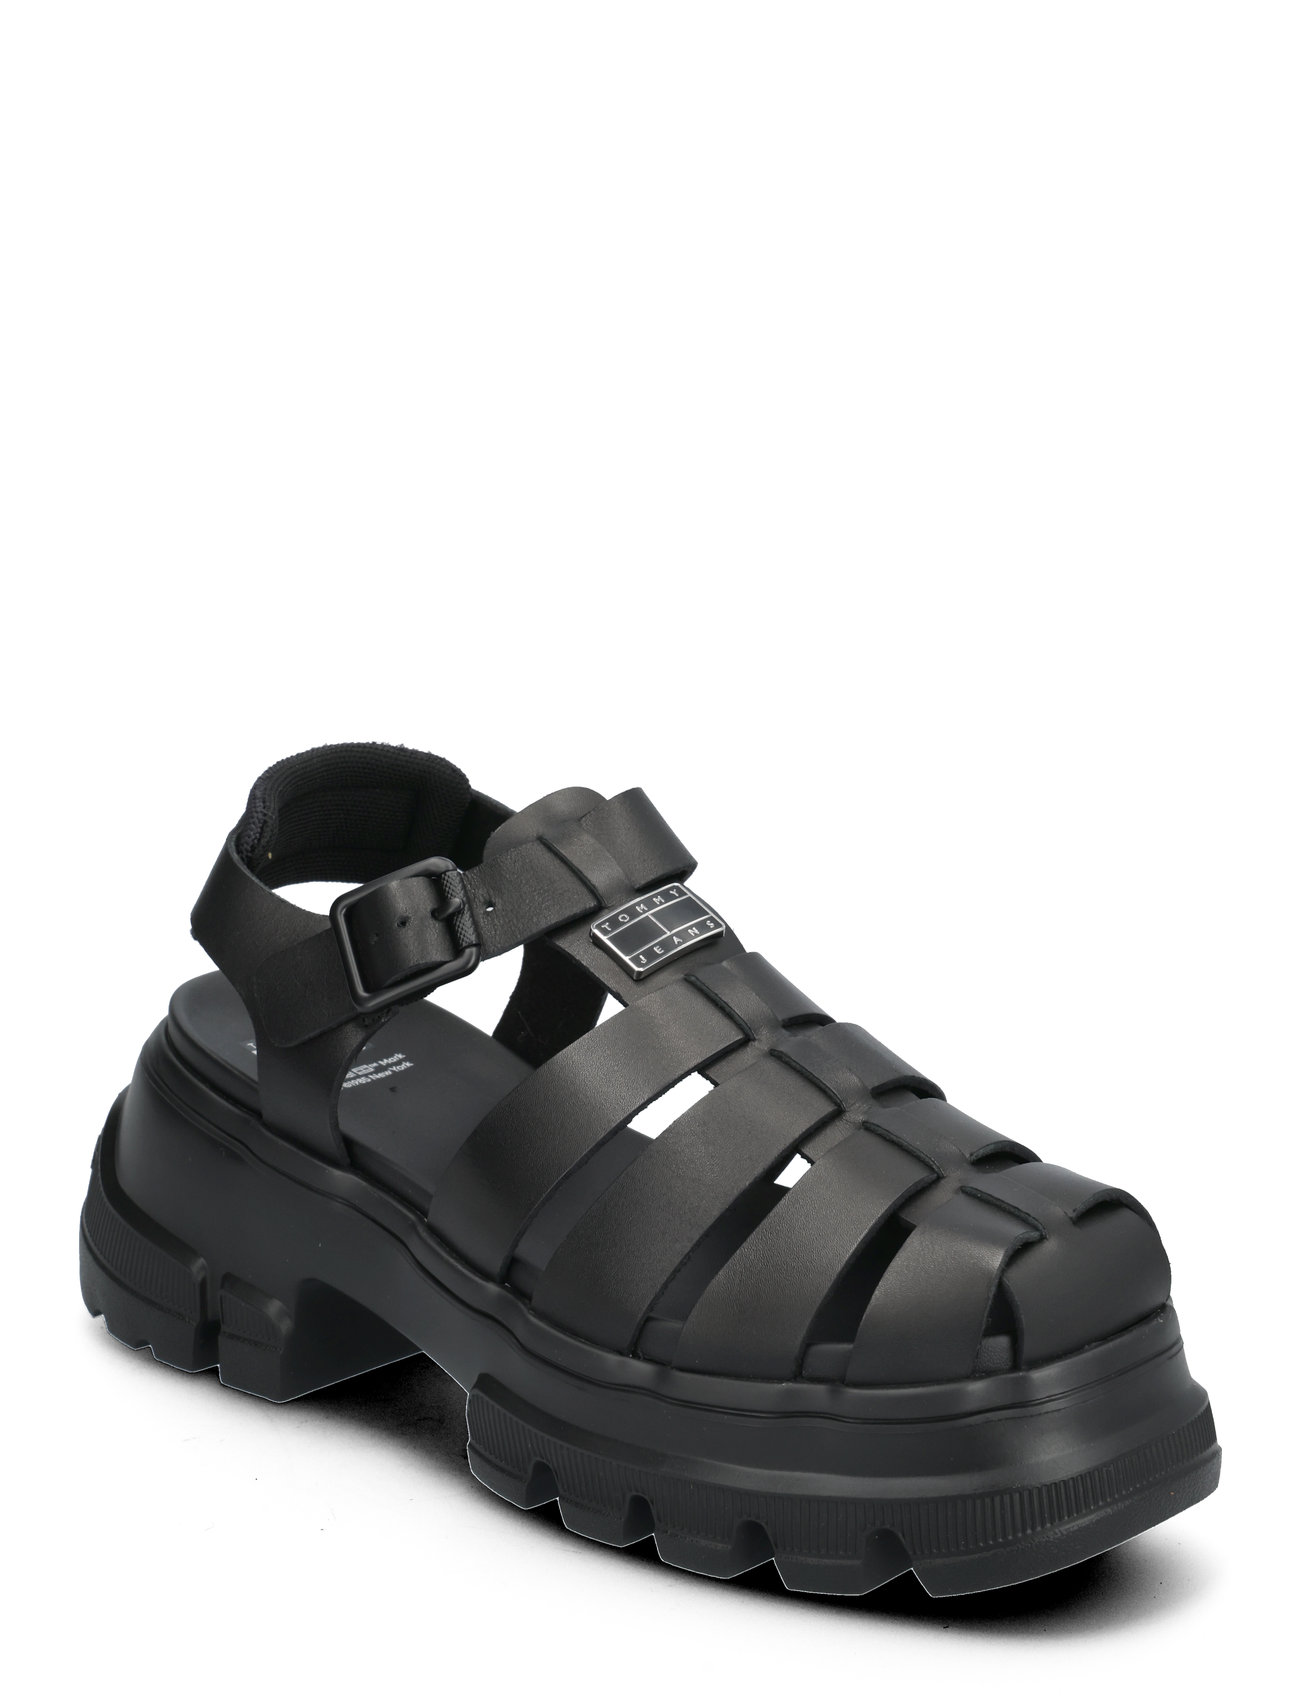 Tjw Fisherman Sandal Shoes Summer Shoes Gladiator Sandals Black Tommy Hilfiger